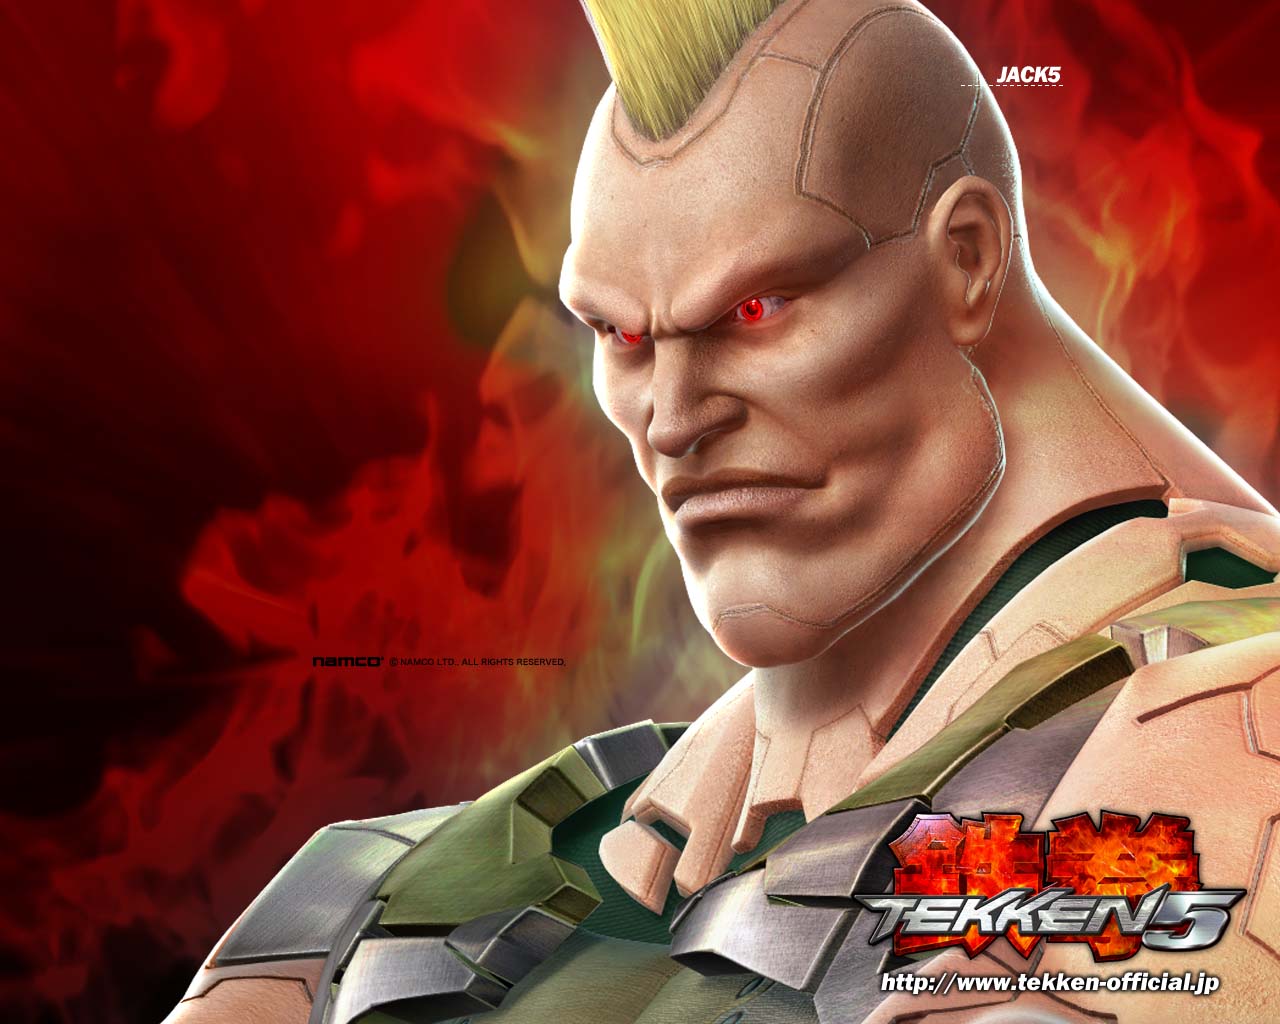 Tekken e as influências (que a Namco nega até o fim!) – Parte 2 